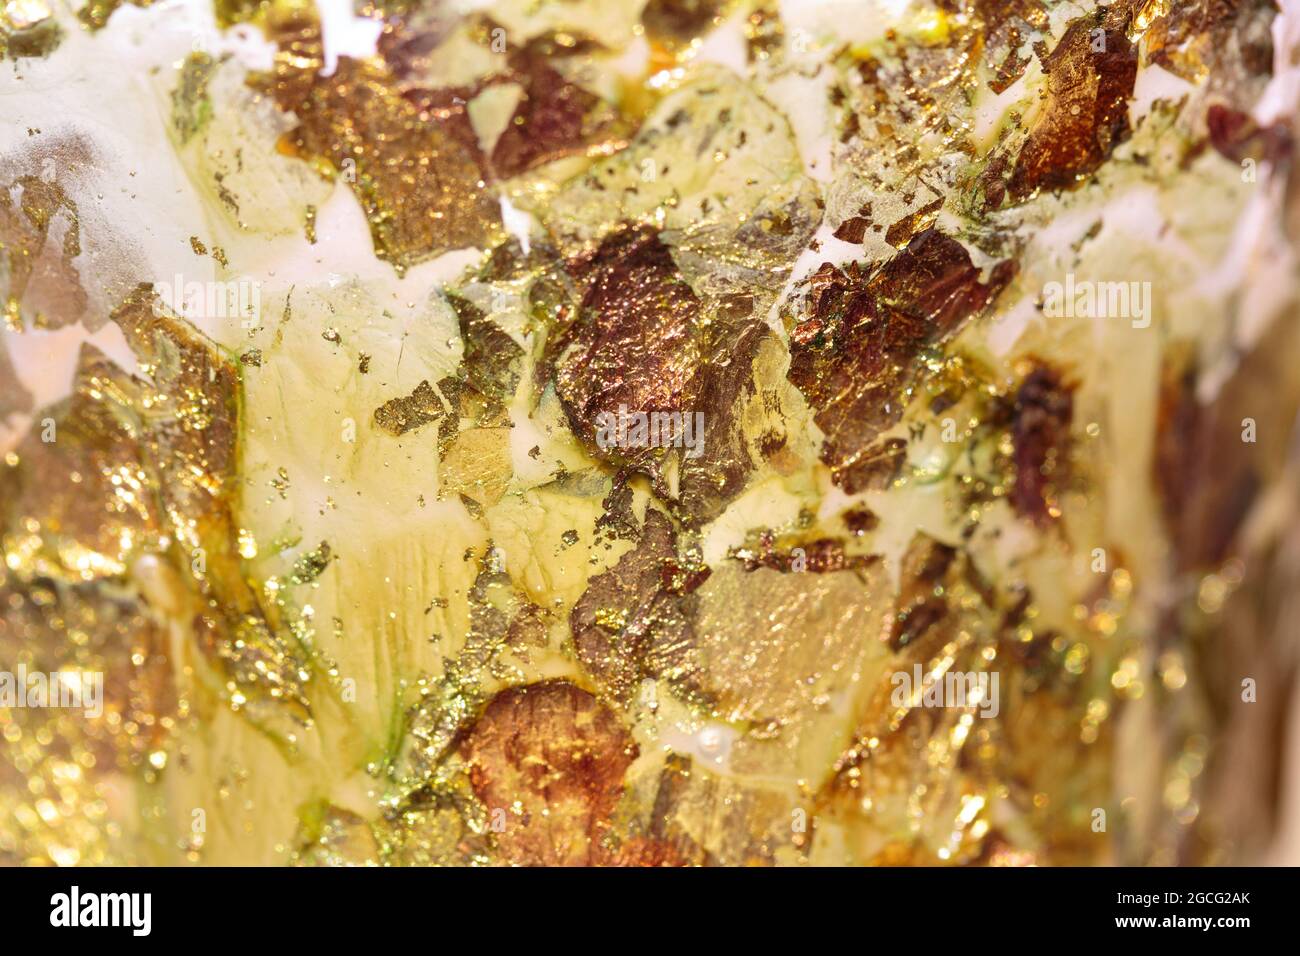 fondo abstracto de motas dispersas, brillantes y de color dorado, amarillo, ámbar, cobre y blanco con una profundidad de campo poco profunda Foto de stock